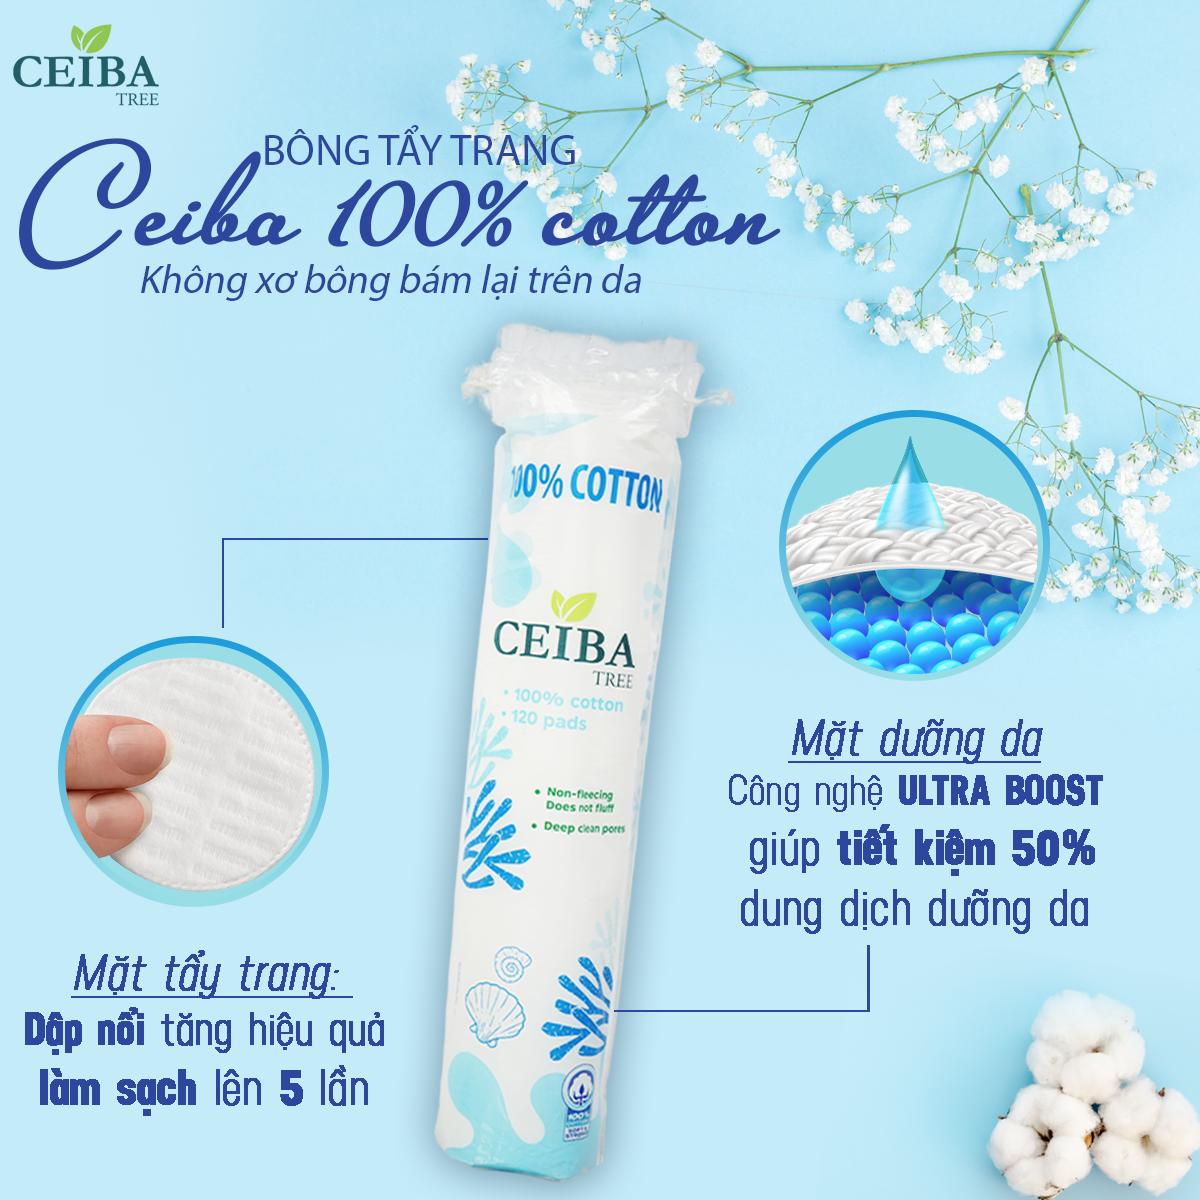 Bông Tẩy Trang Ceiba 100% Cotton Siêu Tiết Kiệm Dung Dịch 80 Miếng